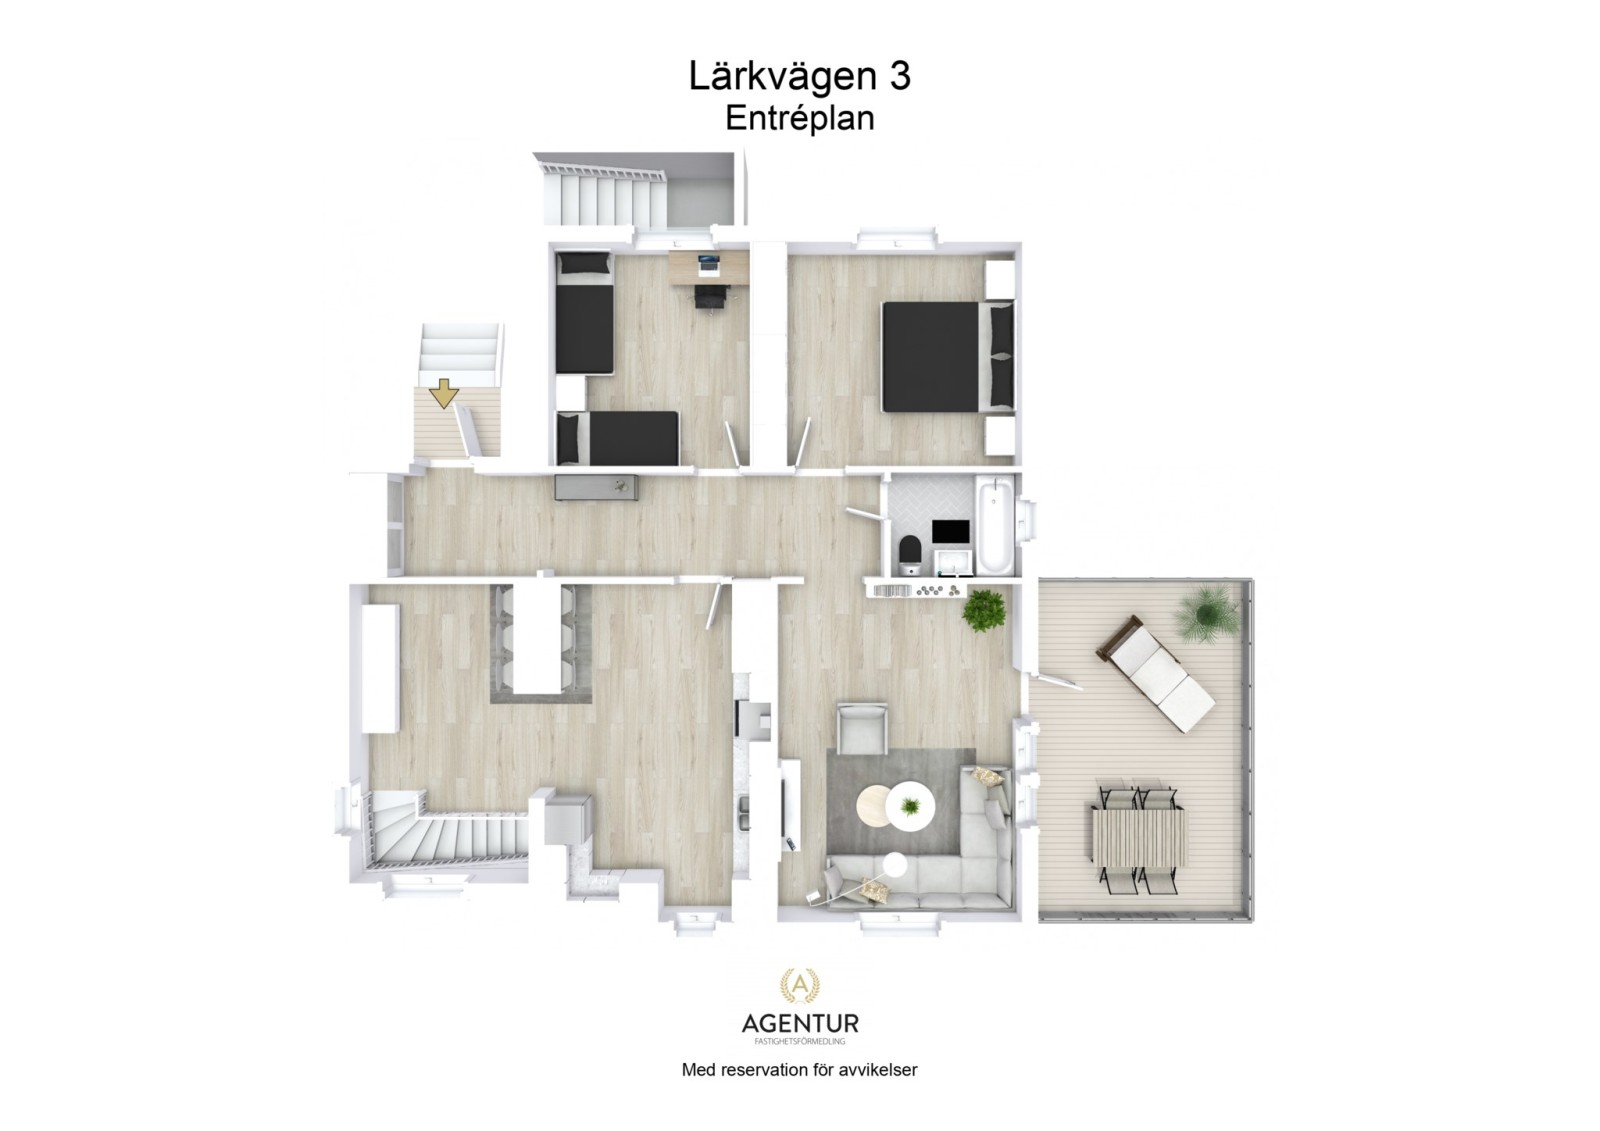 3D Floor Plan - Entréplan - Letterhead Lärkvägen 3